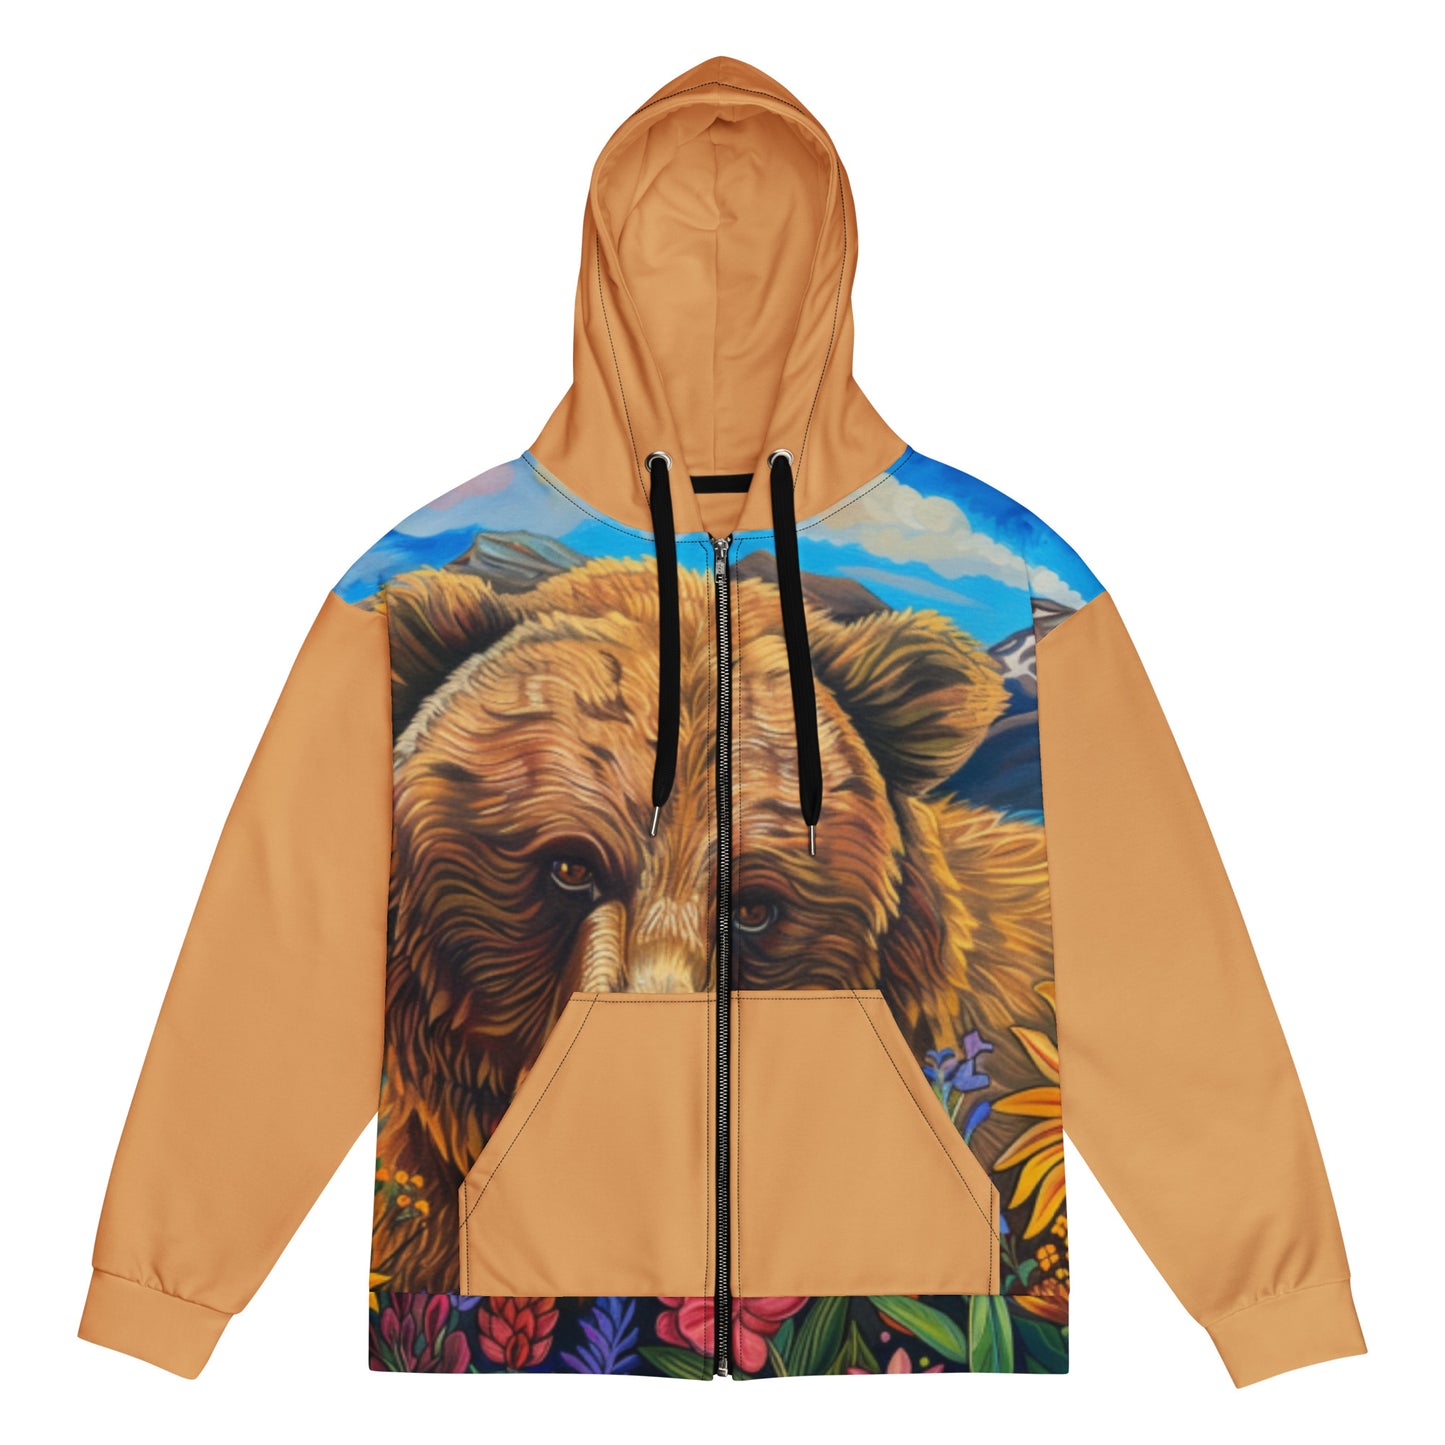 Co. Brown Bear Unisex zip hoodie